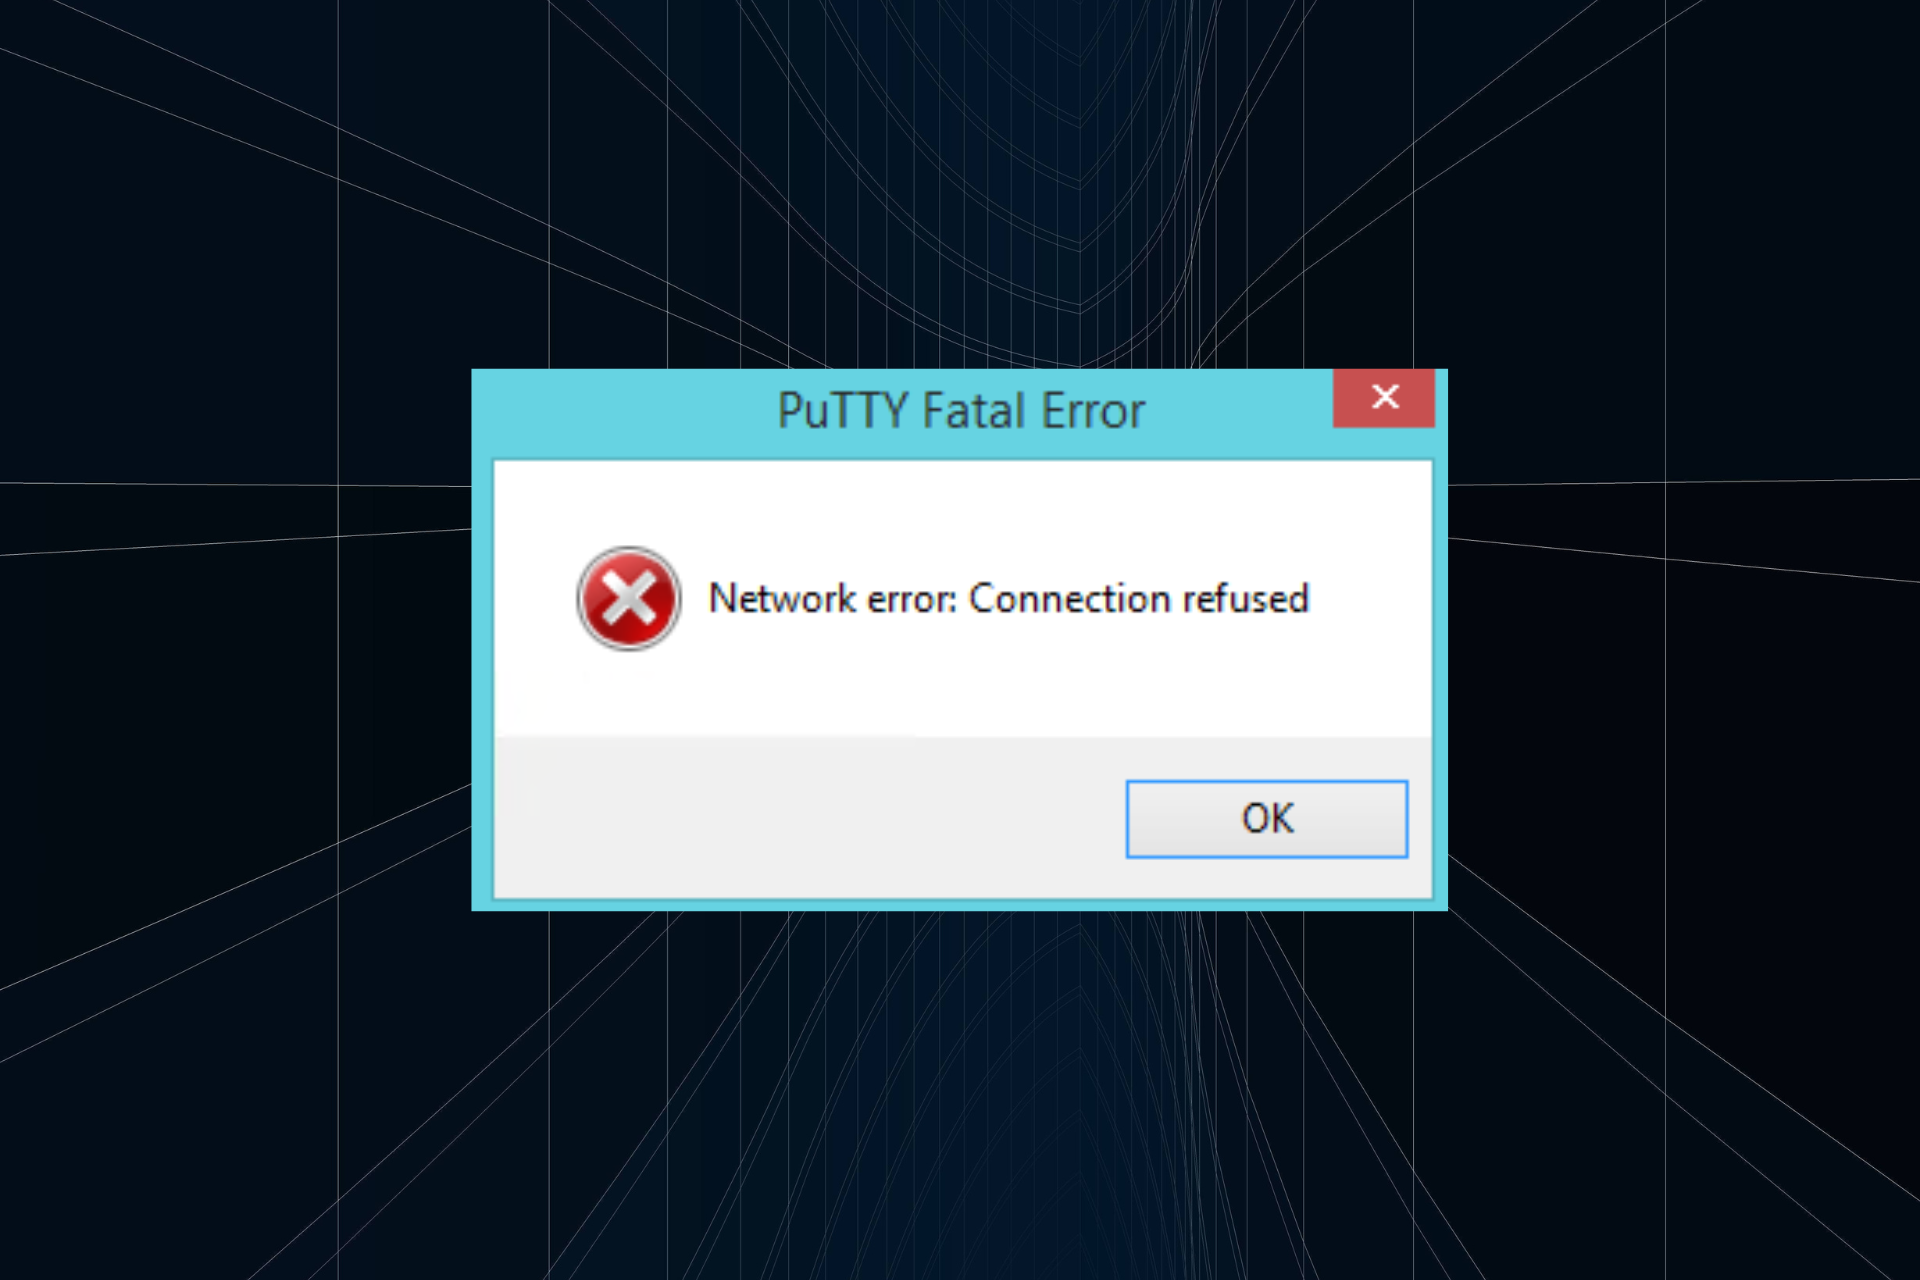 Erro fatal de rede no Putty: conexão recusada [correção]